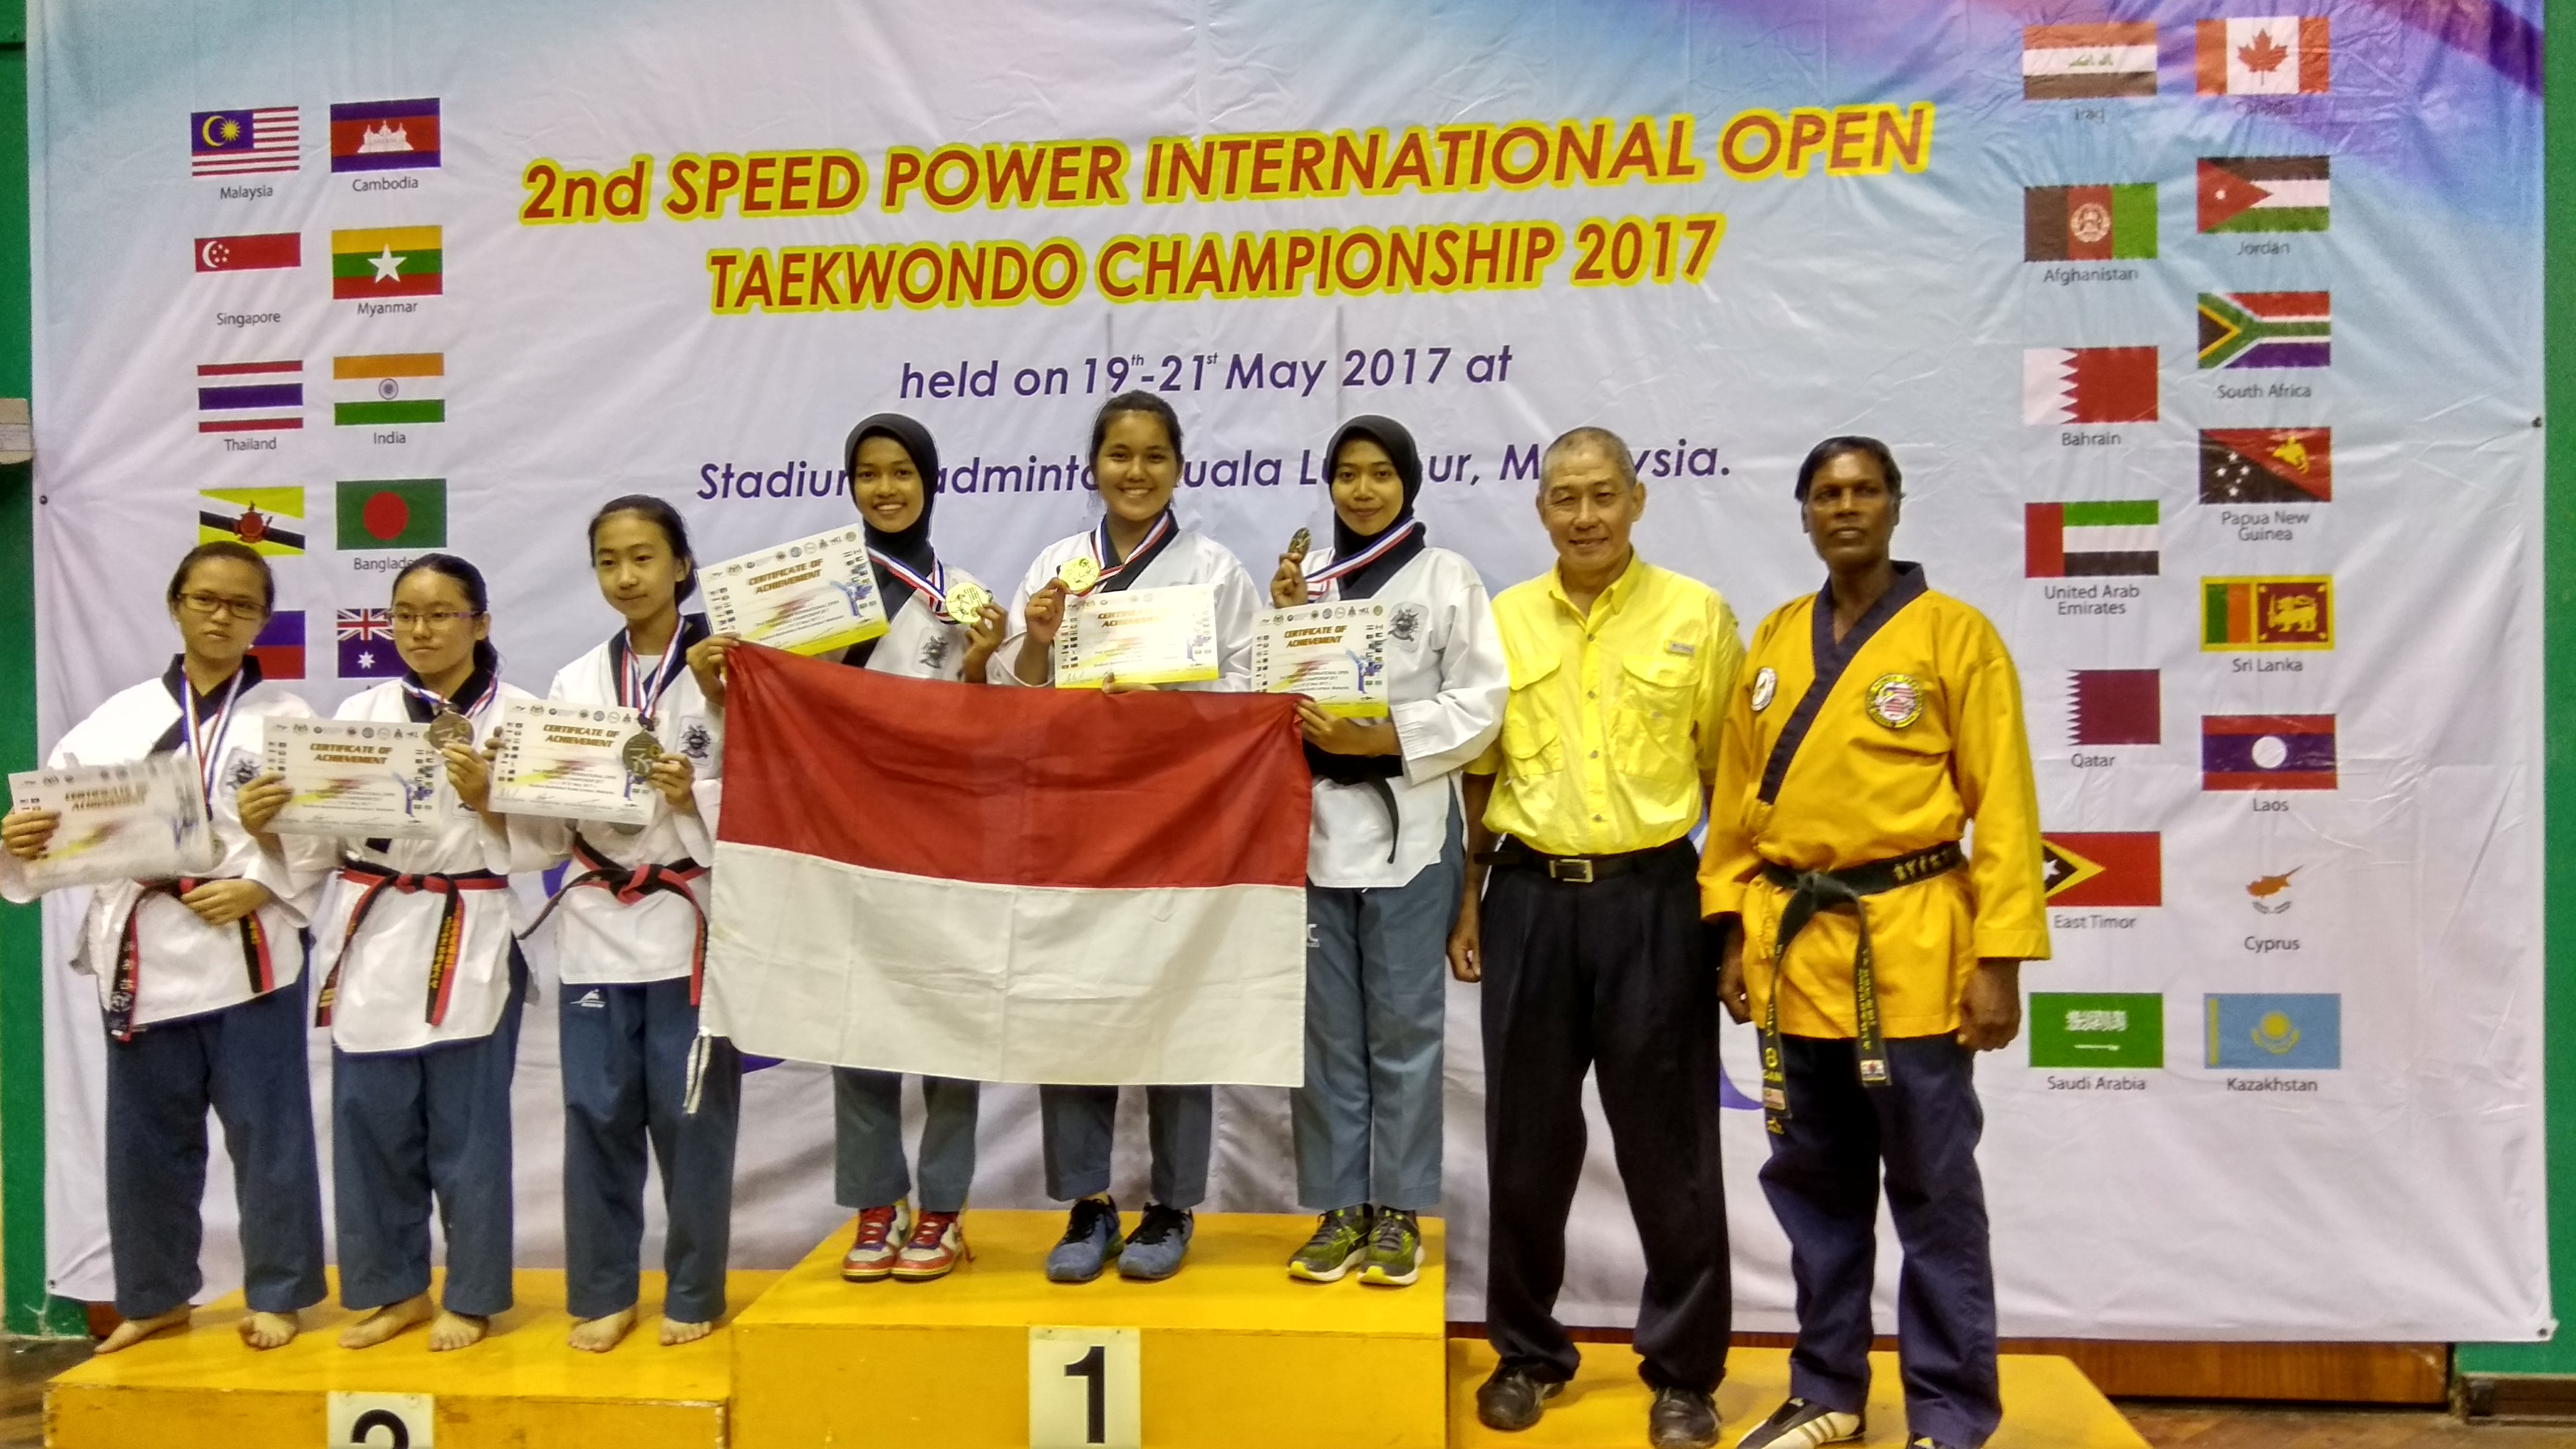 Foto 2nd Speed Power International Open Taekwondo Championship 2017